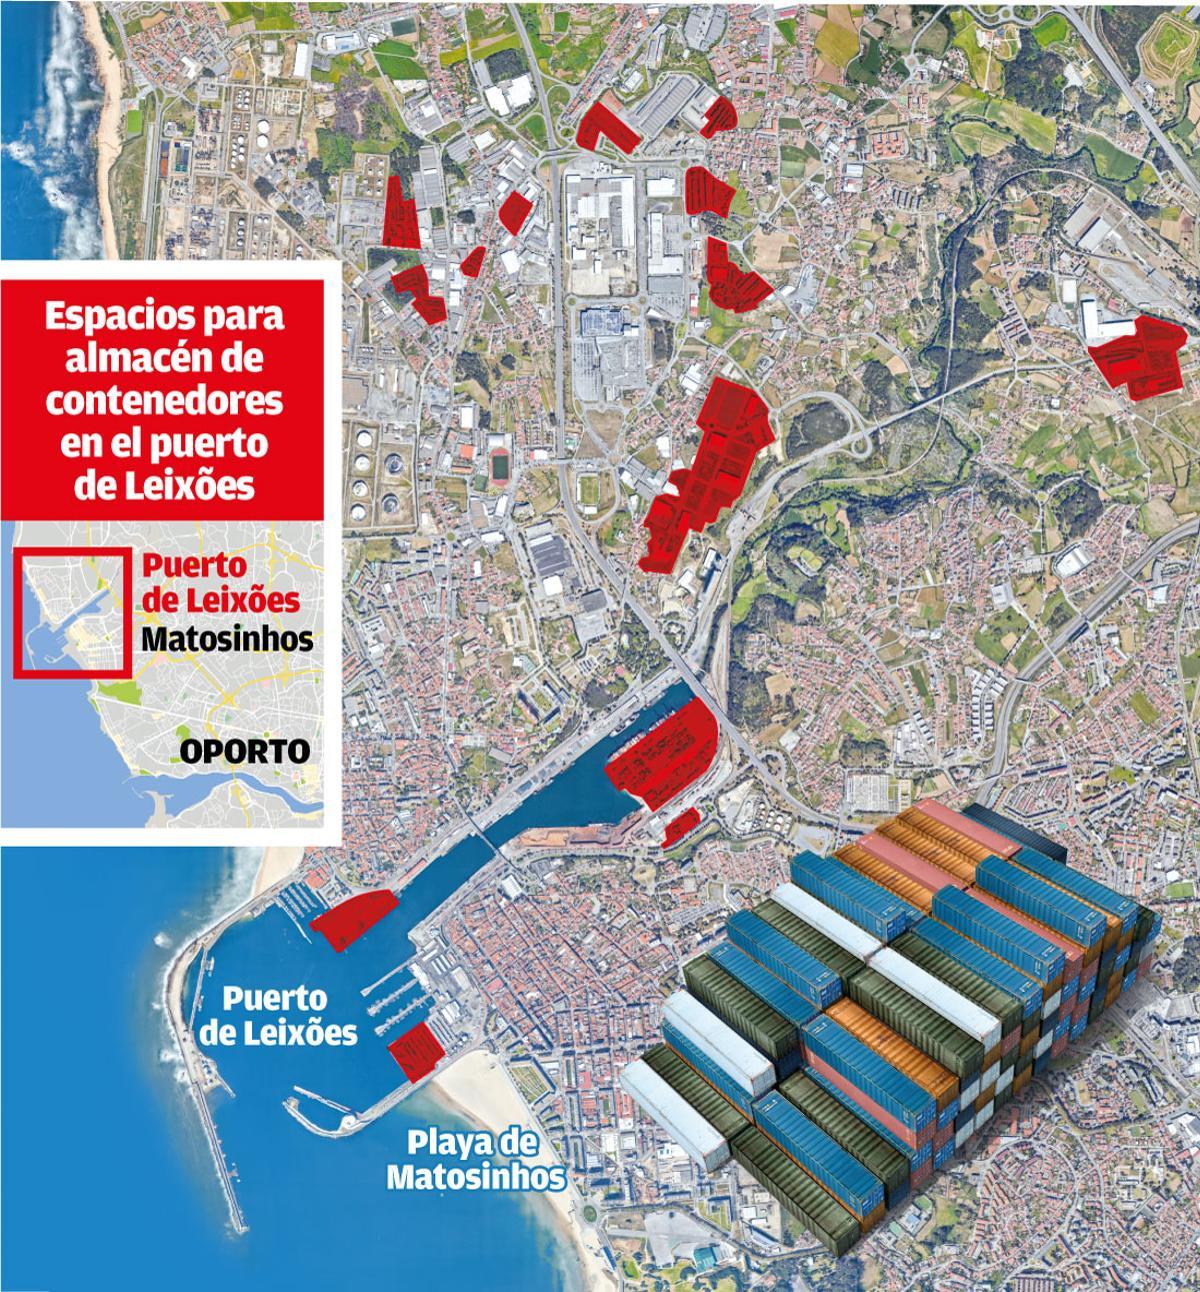 Espacios para almacén de contenedores en el puerto de Leixões